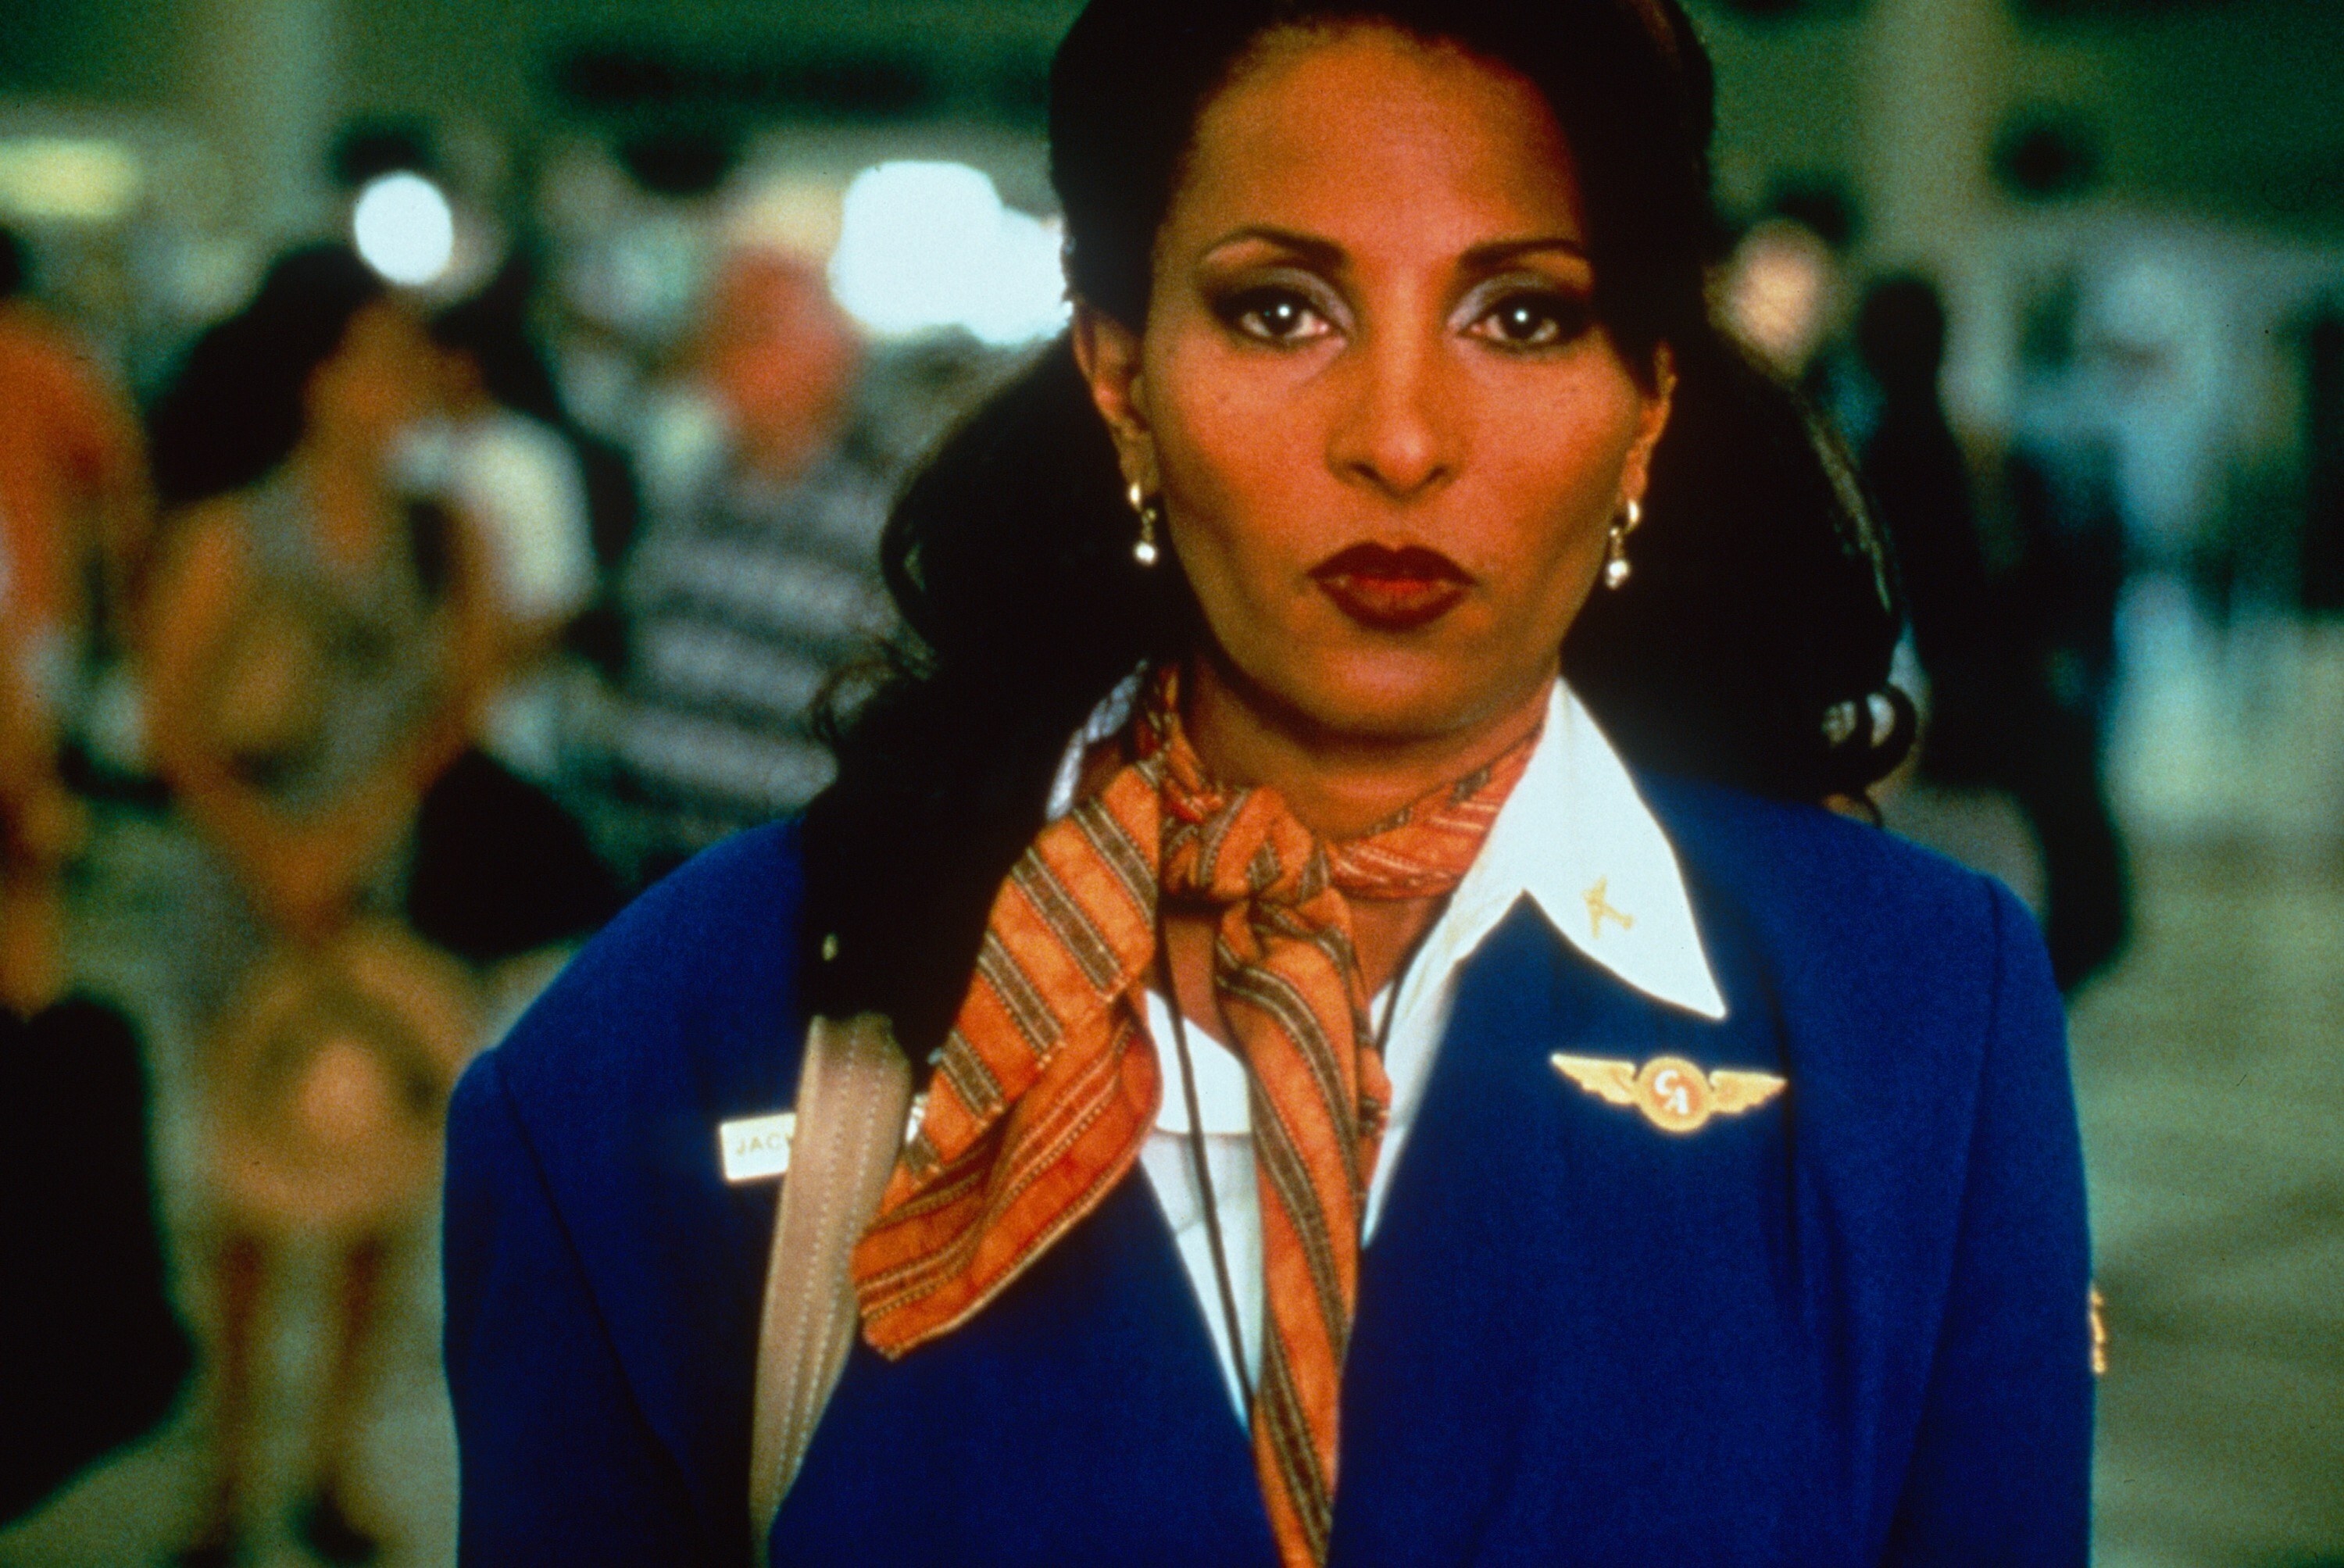 Pam Grier stands in an airport wearing a flight attendant uniform